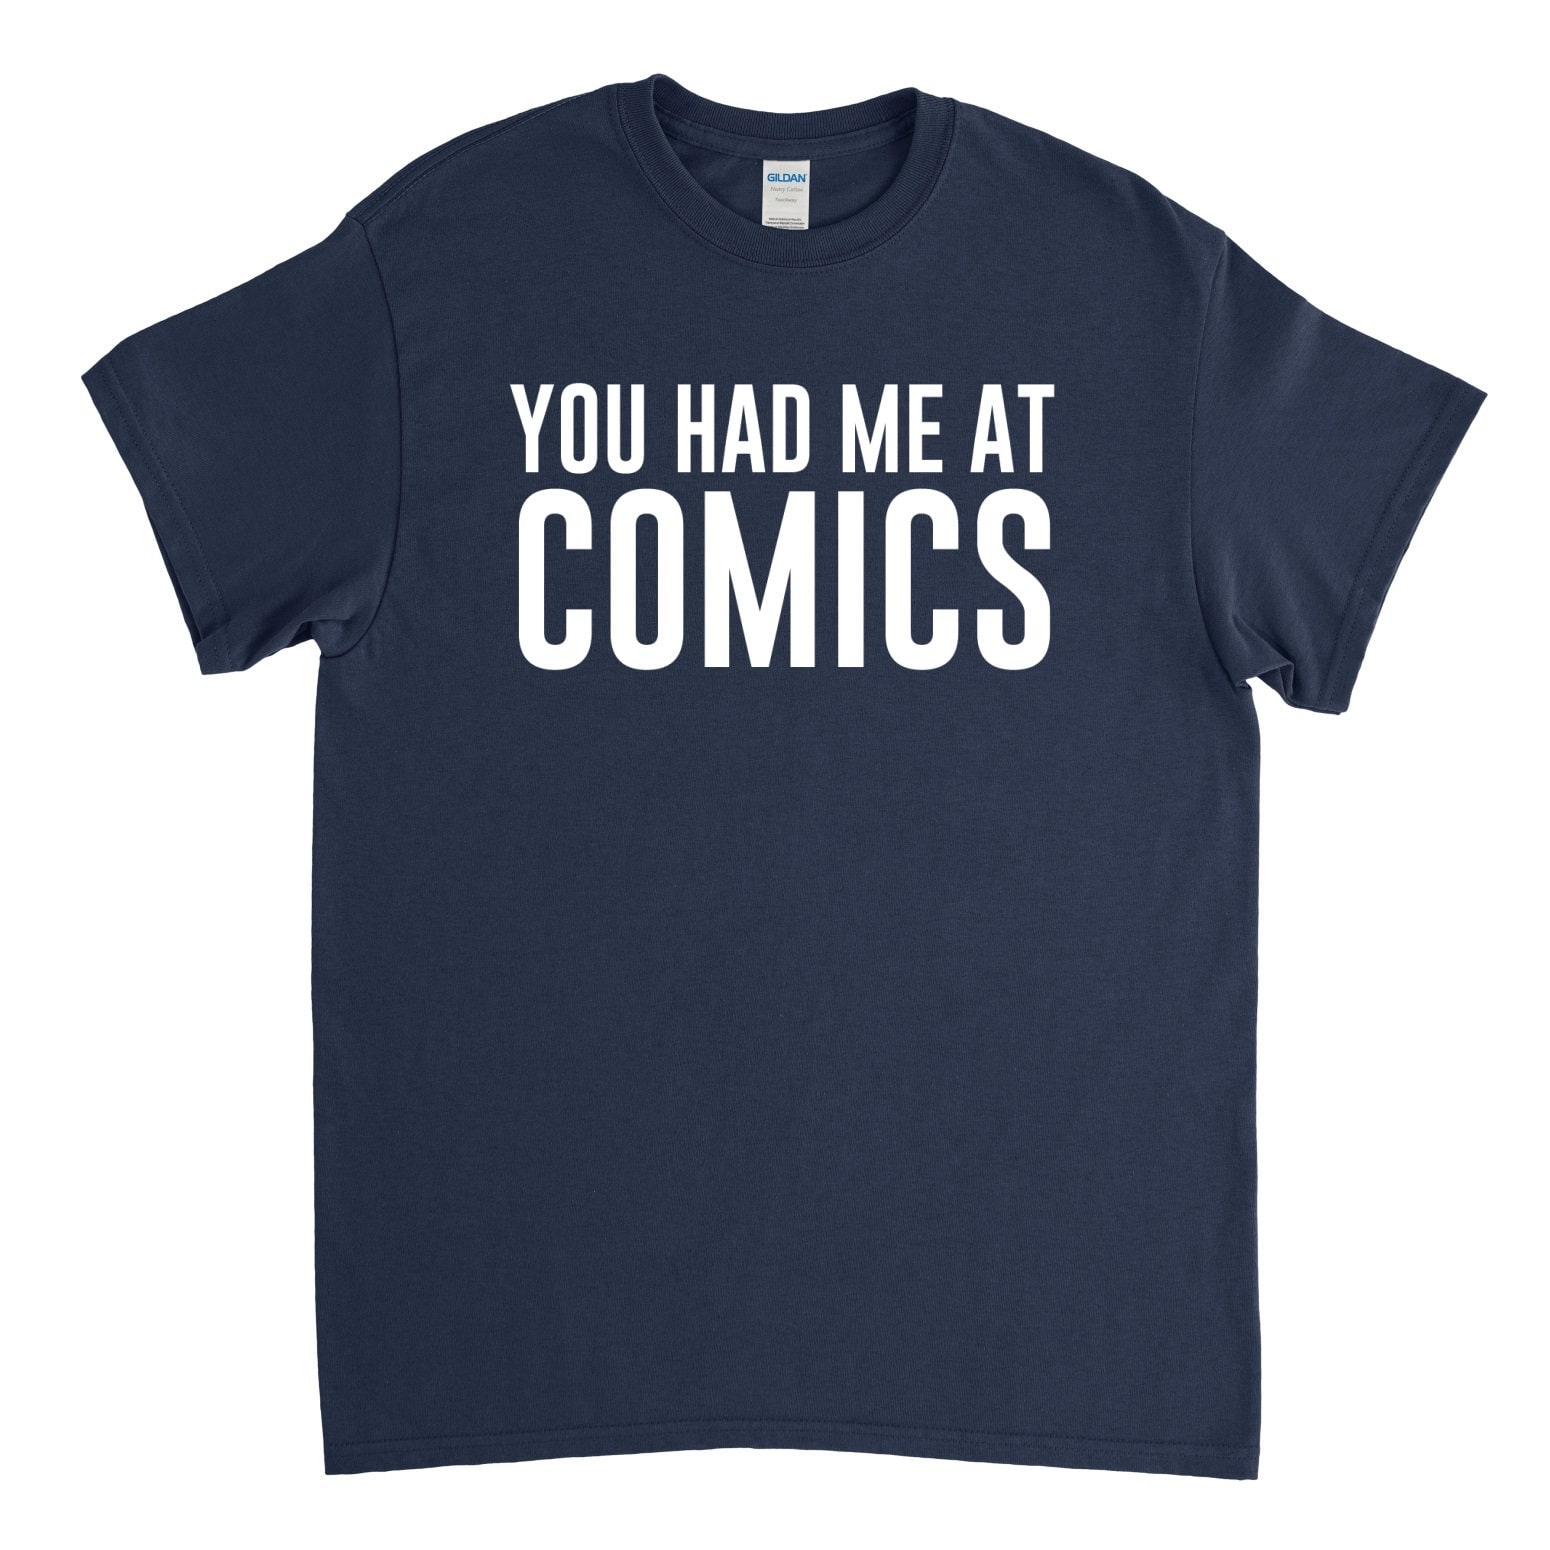 Comic Book Collector Book Shirt You Had Me at Comics